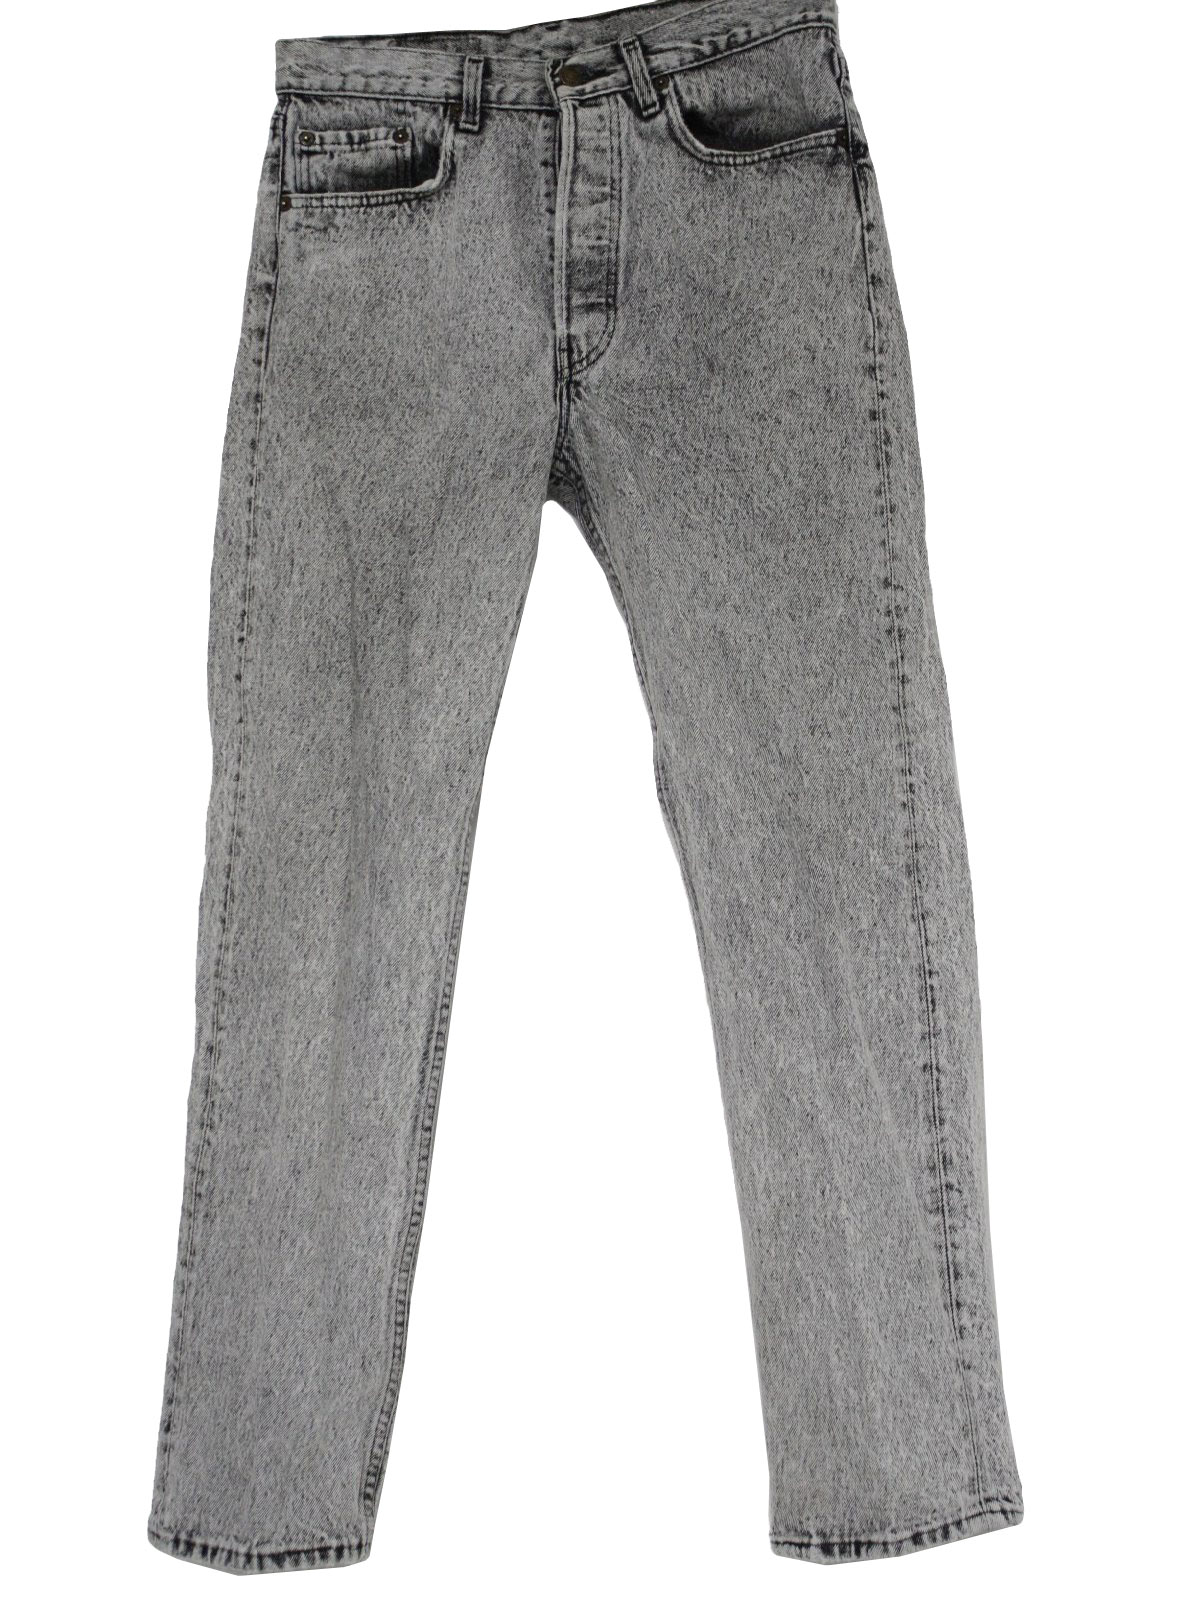 1980's Retro Pants: 80s -Levis- Mens grey acid wash cotton denim jeans ...